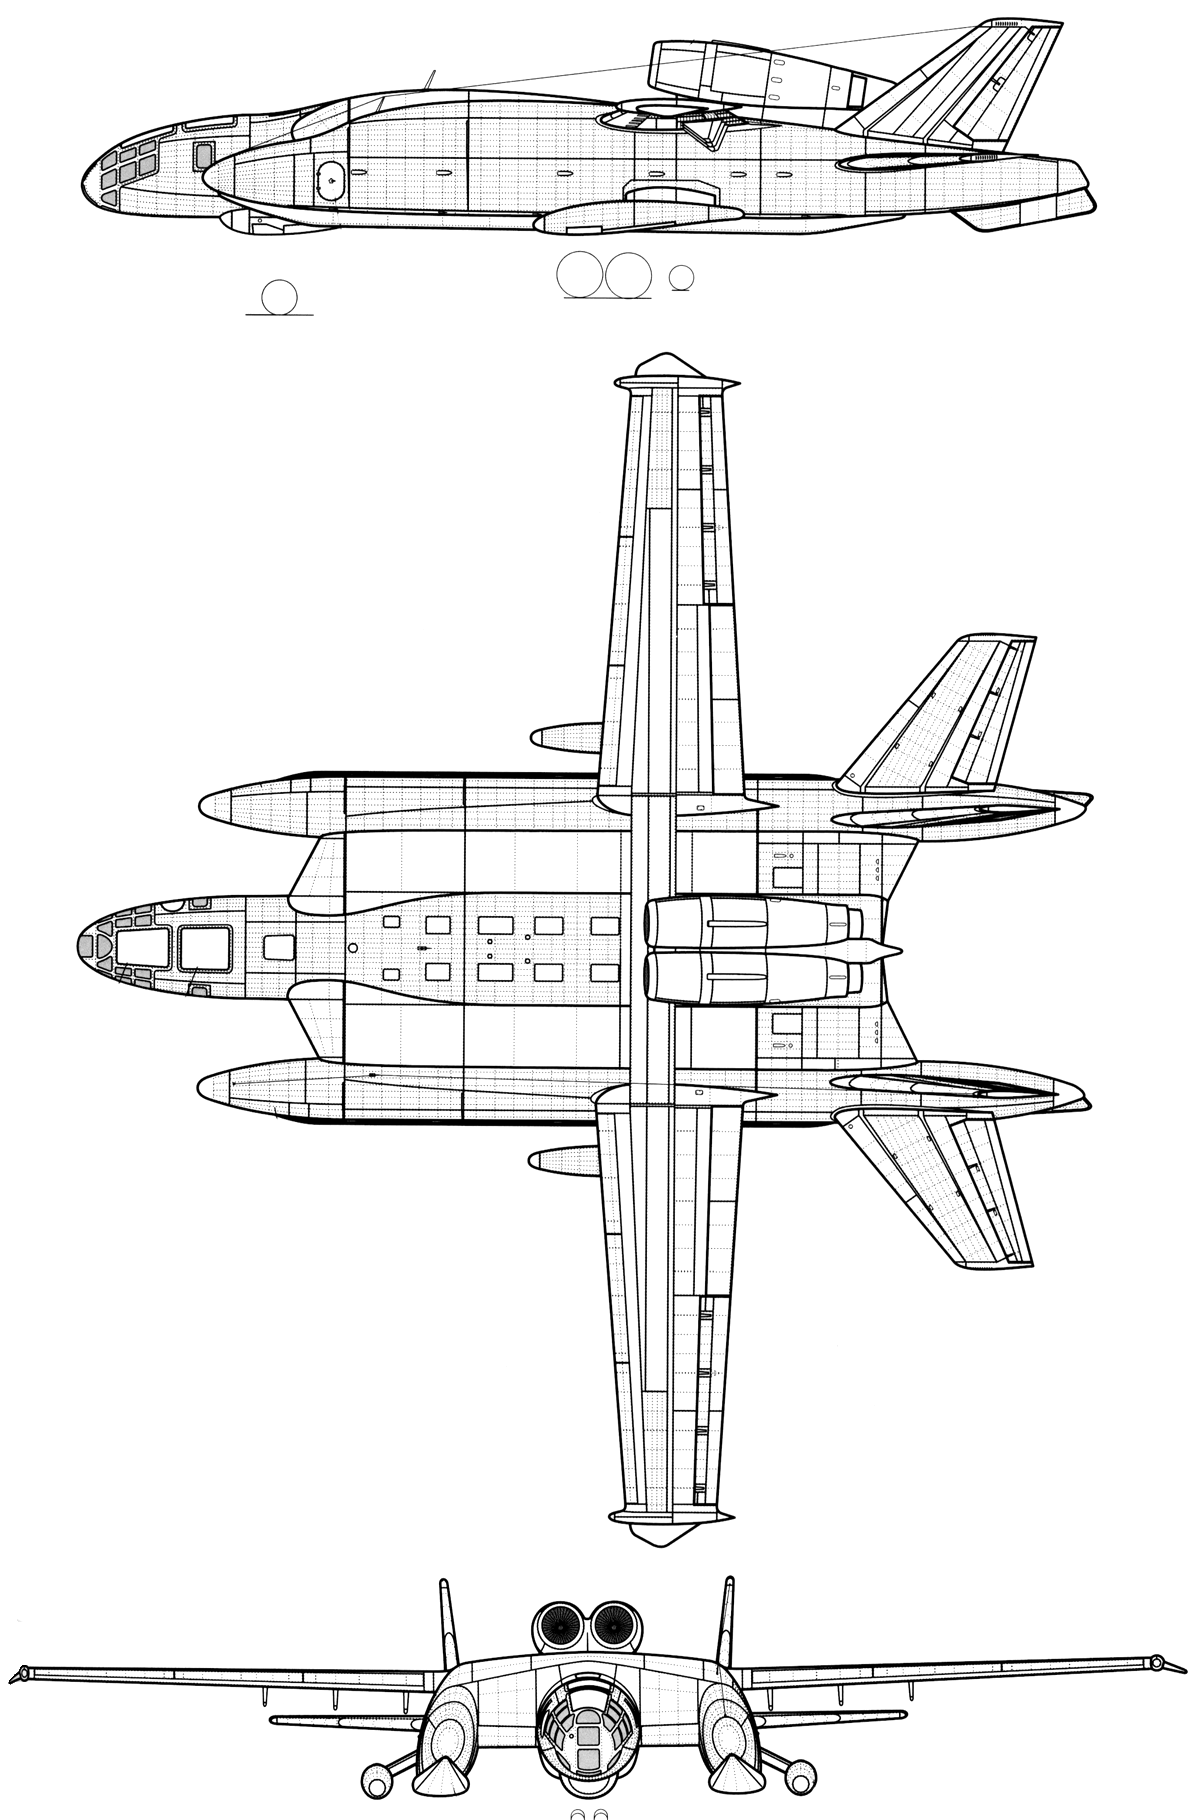 Самолет-амфибия вва-14 с вертикальным взлетом